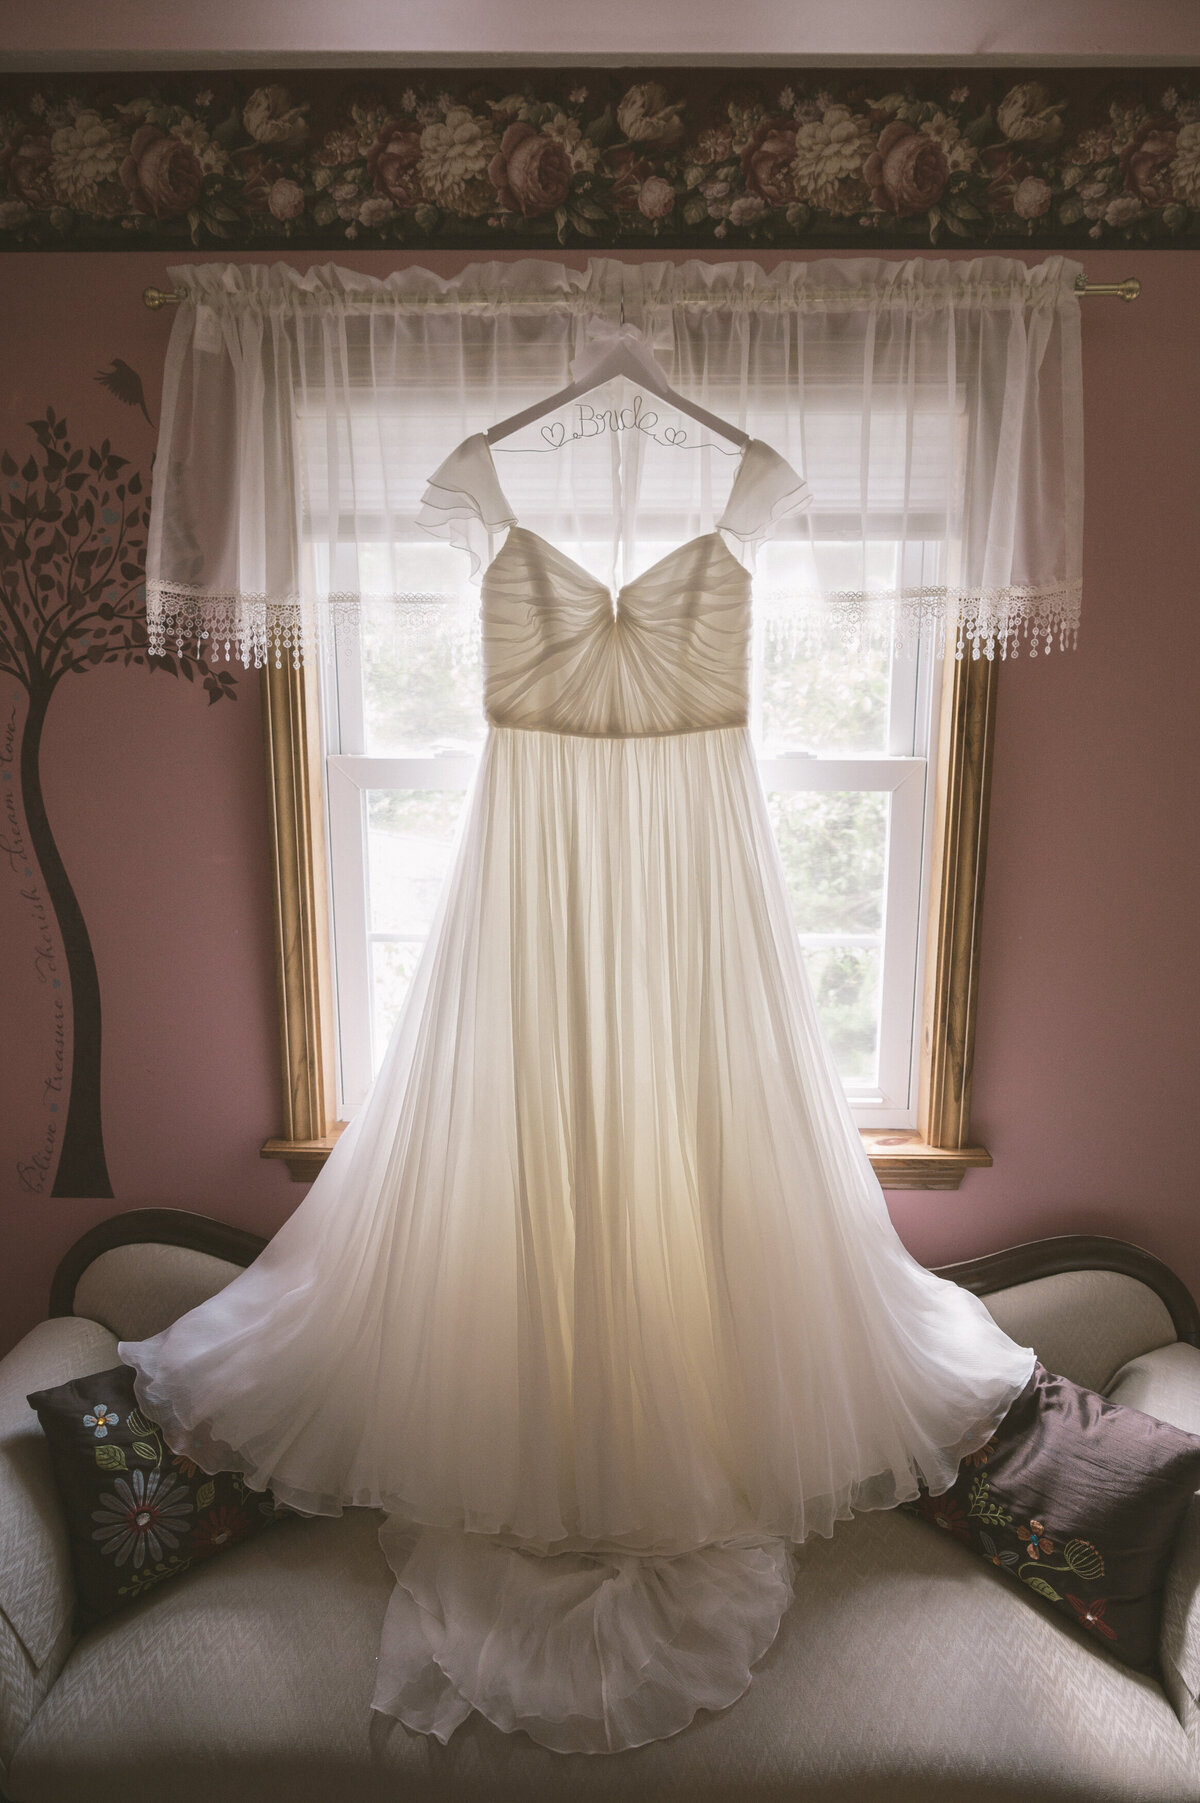 Wedding dress detail by window.